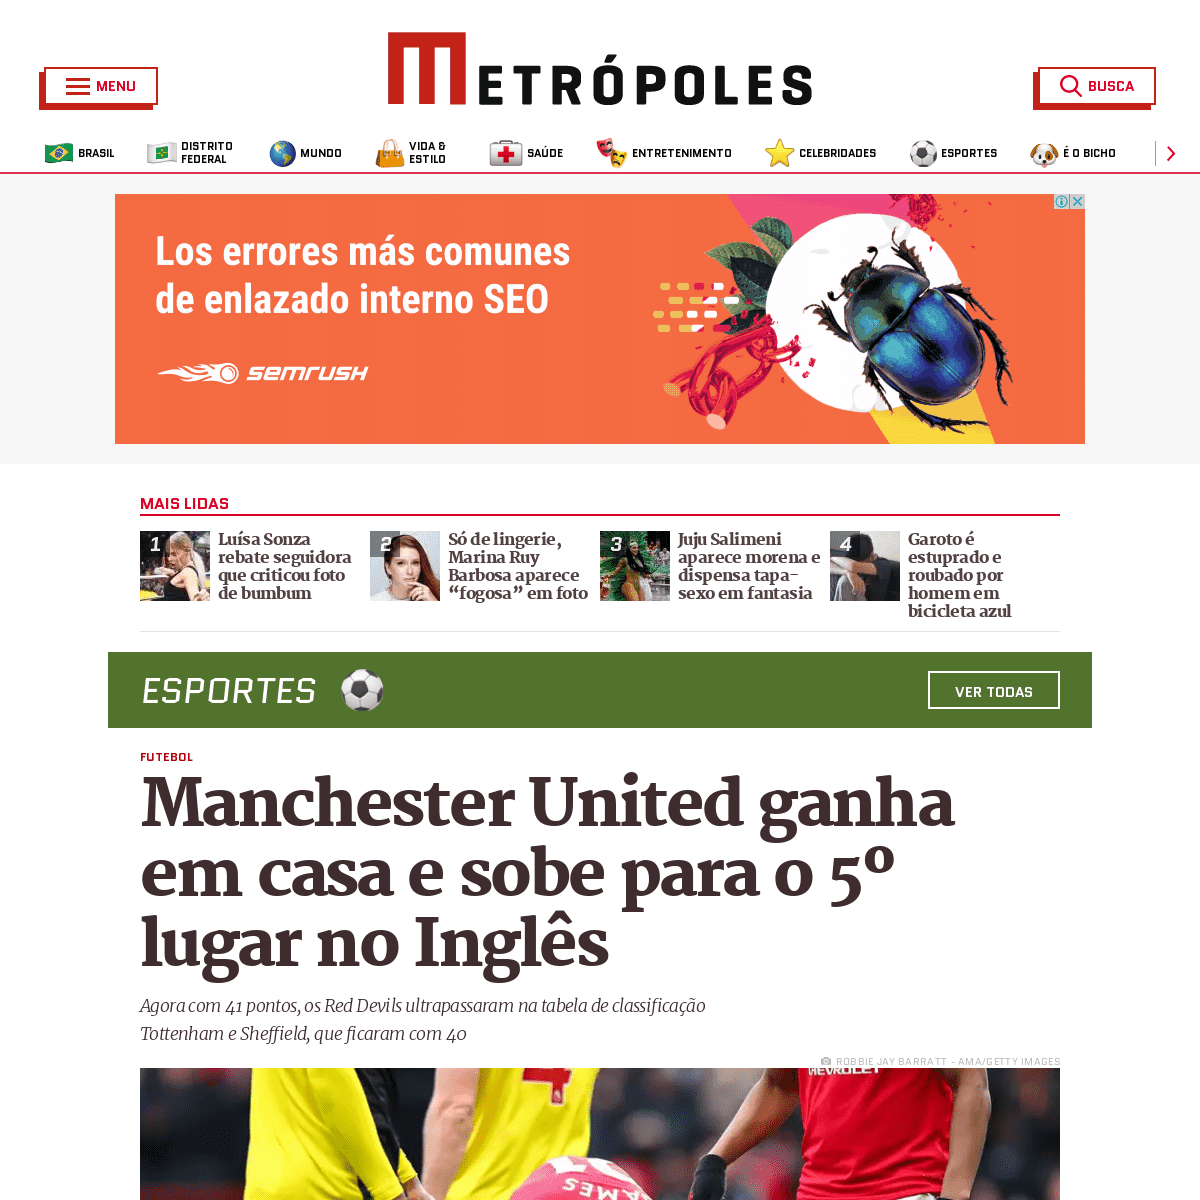 A complete backup of www.metropoles.com/esportes/futebol/manchester-united-ganha-em-casa-e-sobe-para-o-5o-lugar-no-ingles